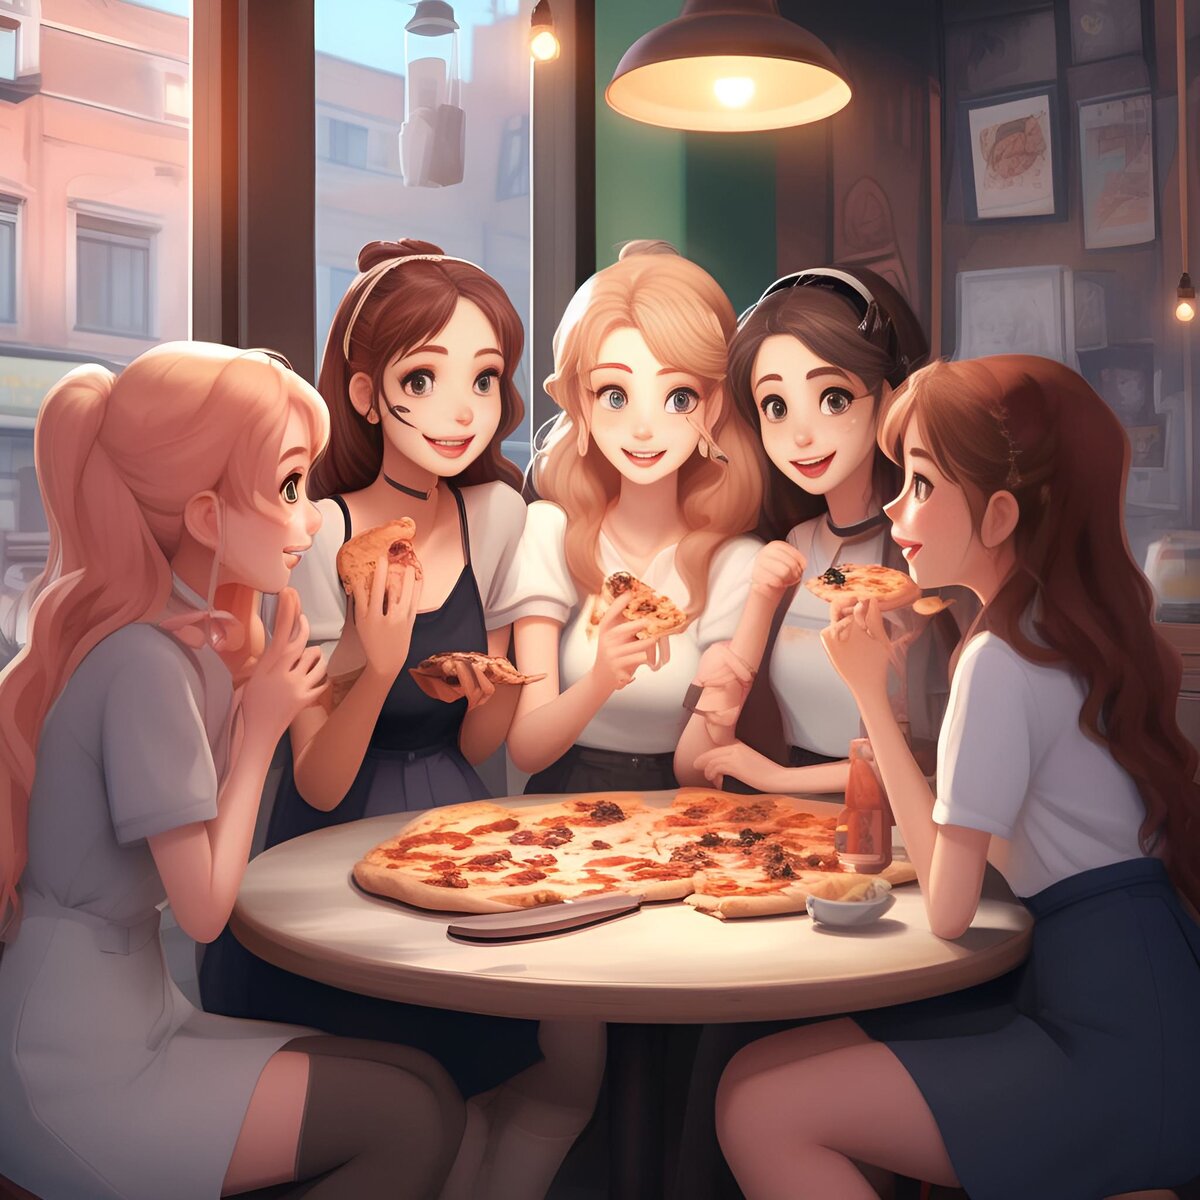 Представьте, что вы ужинаете в кафетерии, и вся компания заказывает огромную пиццу, чтобы разделить трапезу на всех.-2